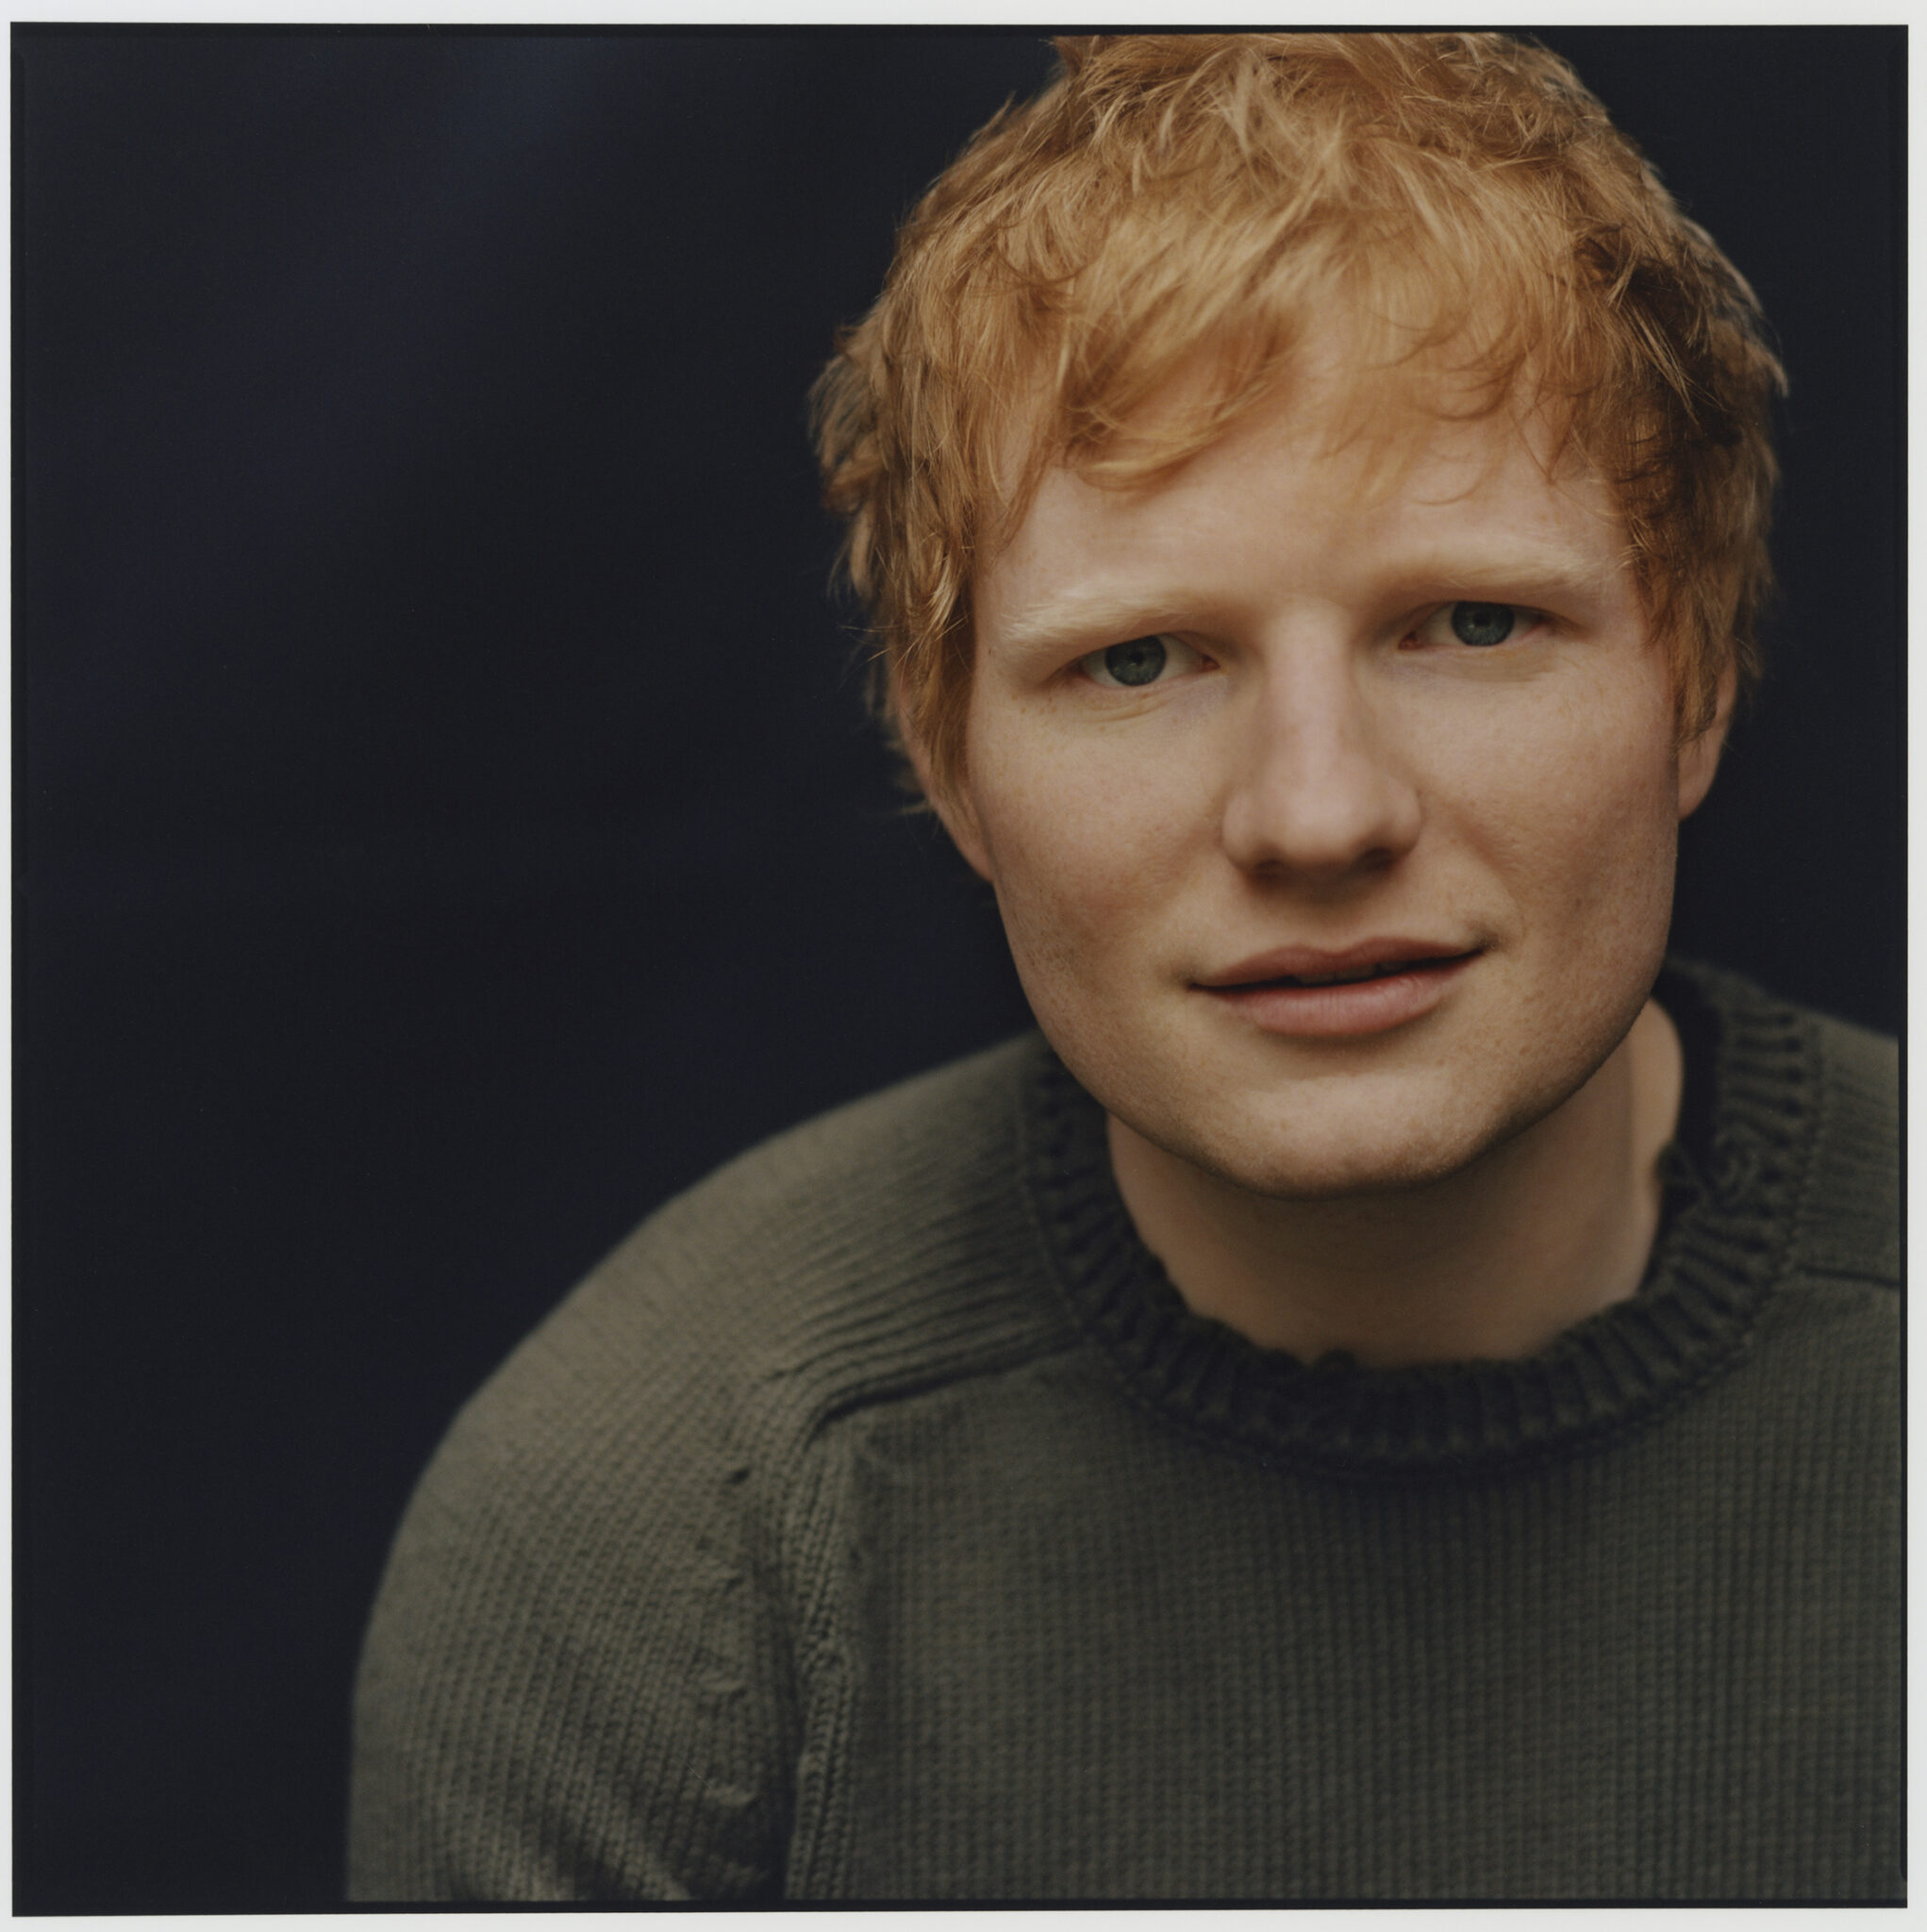 Ed Sheeran grüner Pullover schwarzer Hintergrund